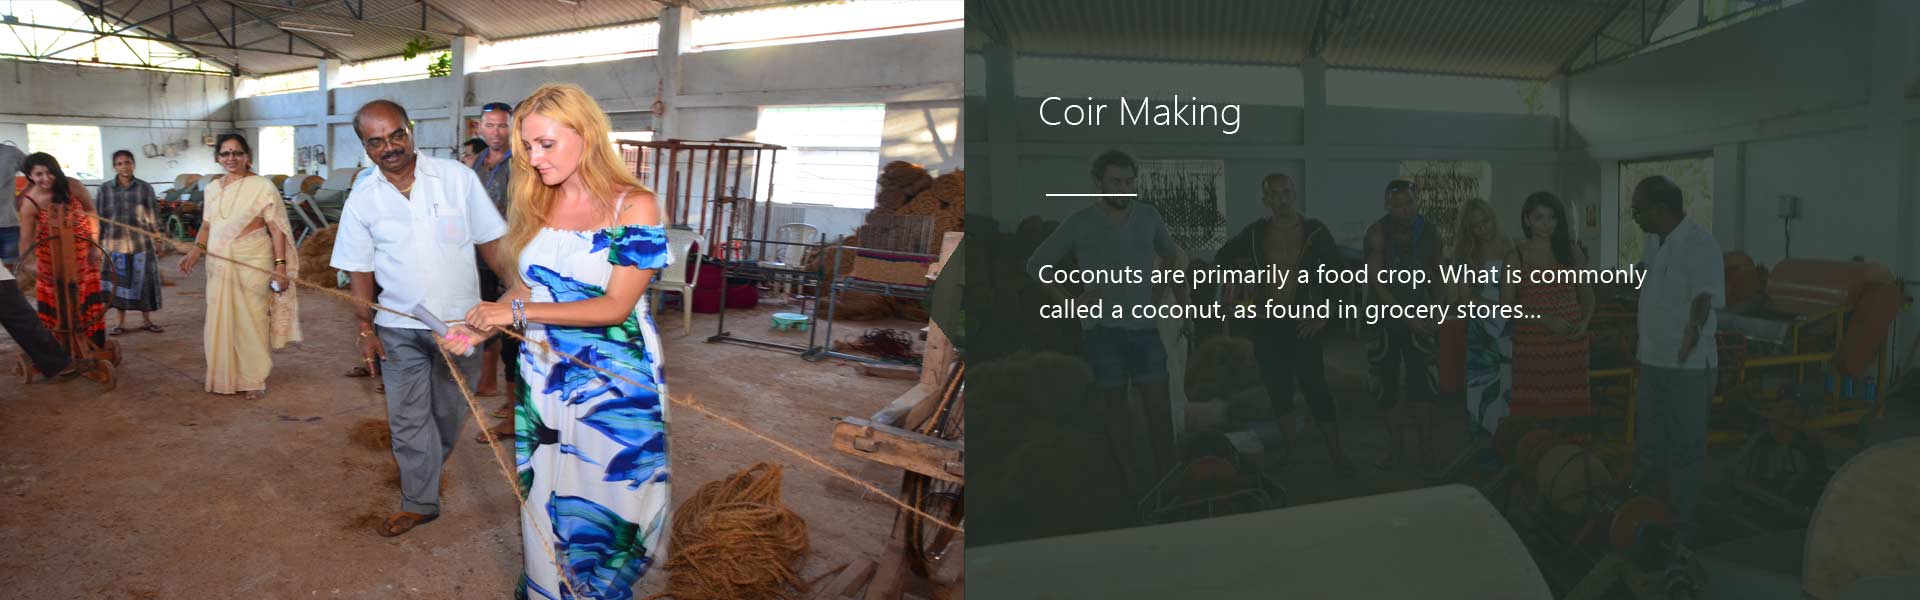 Coir Making Activities in Resort